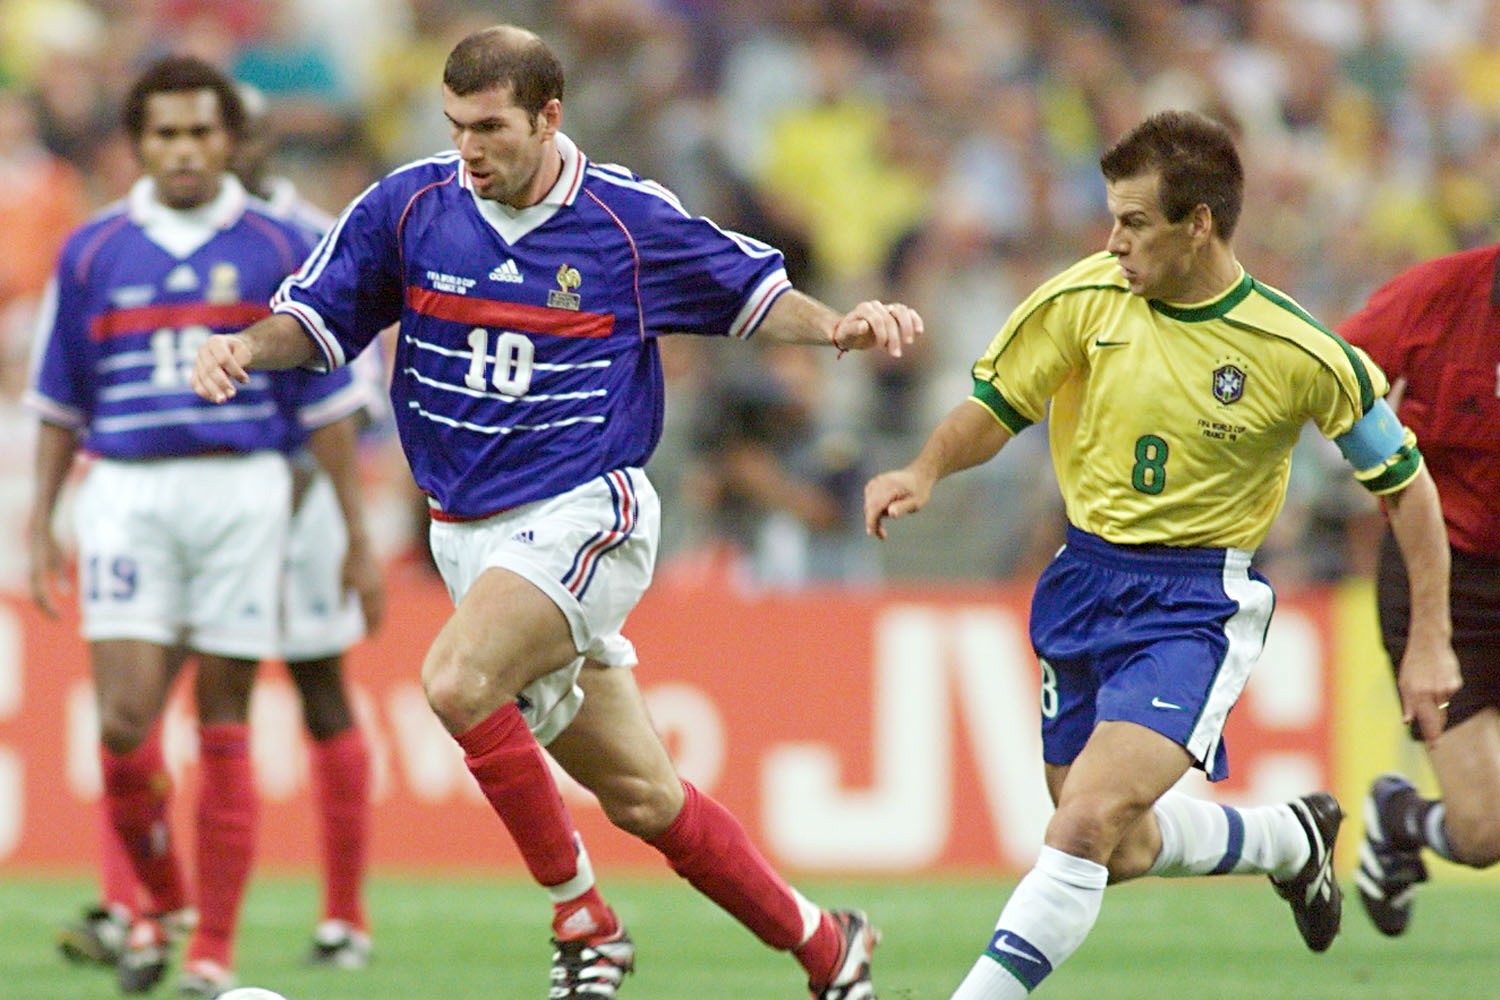 Zidane 1998